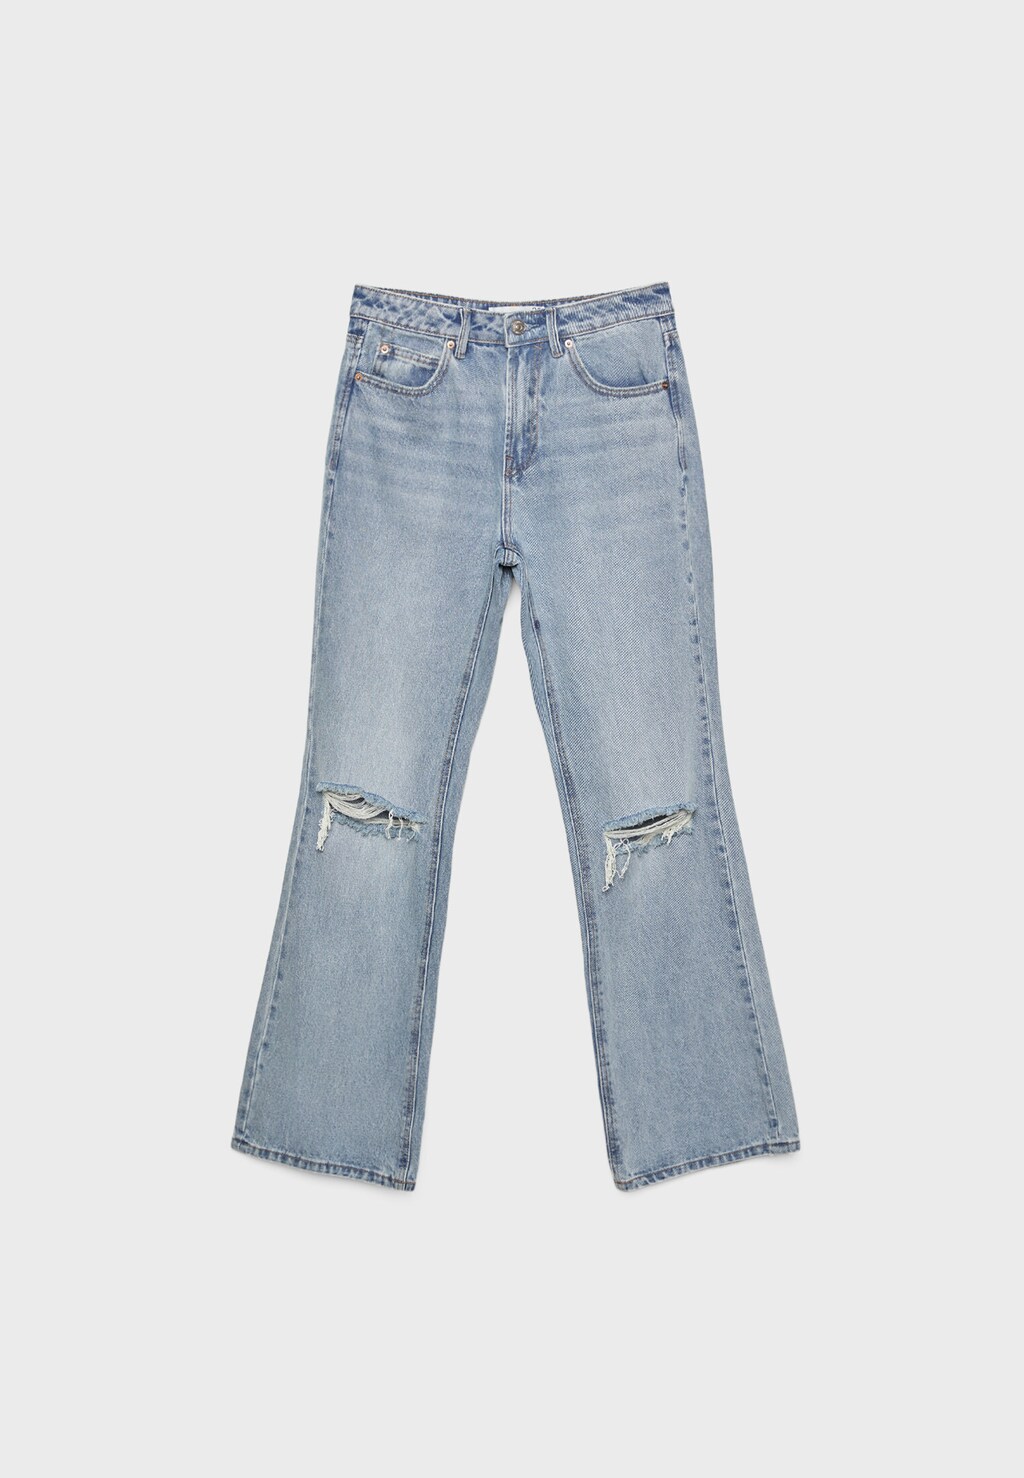 Vintage flared jeans